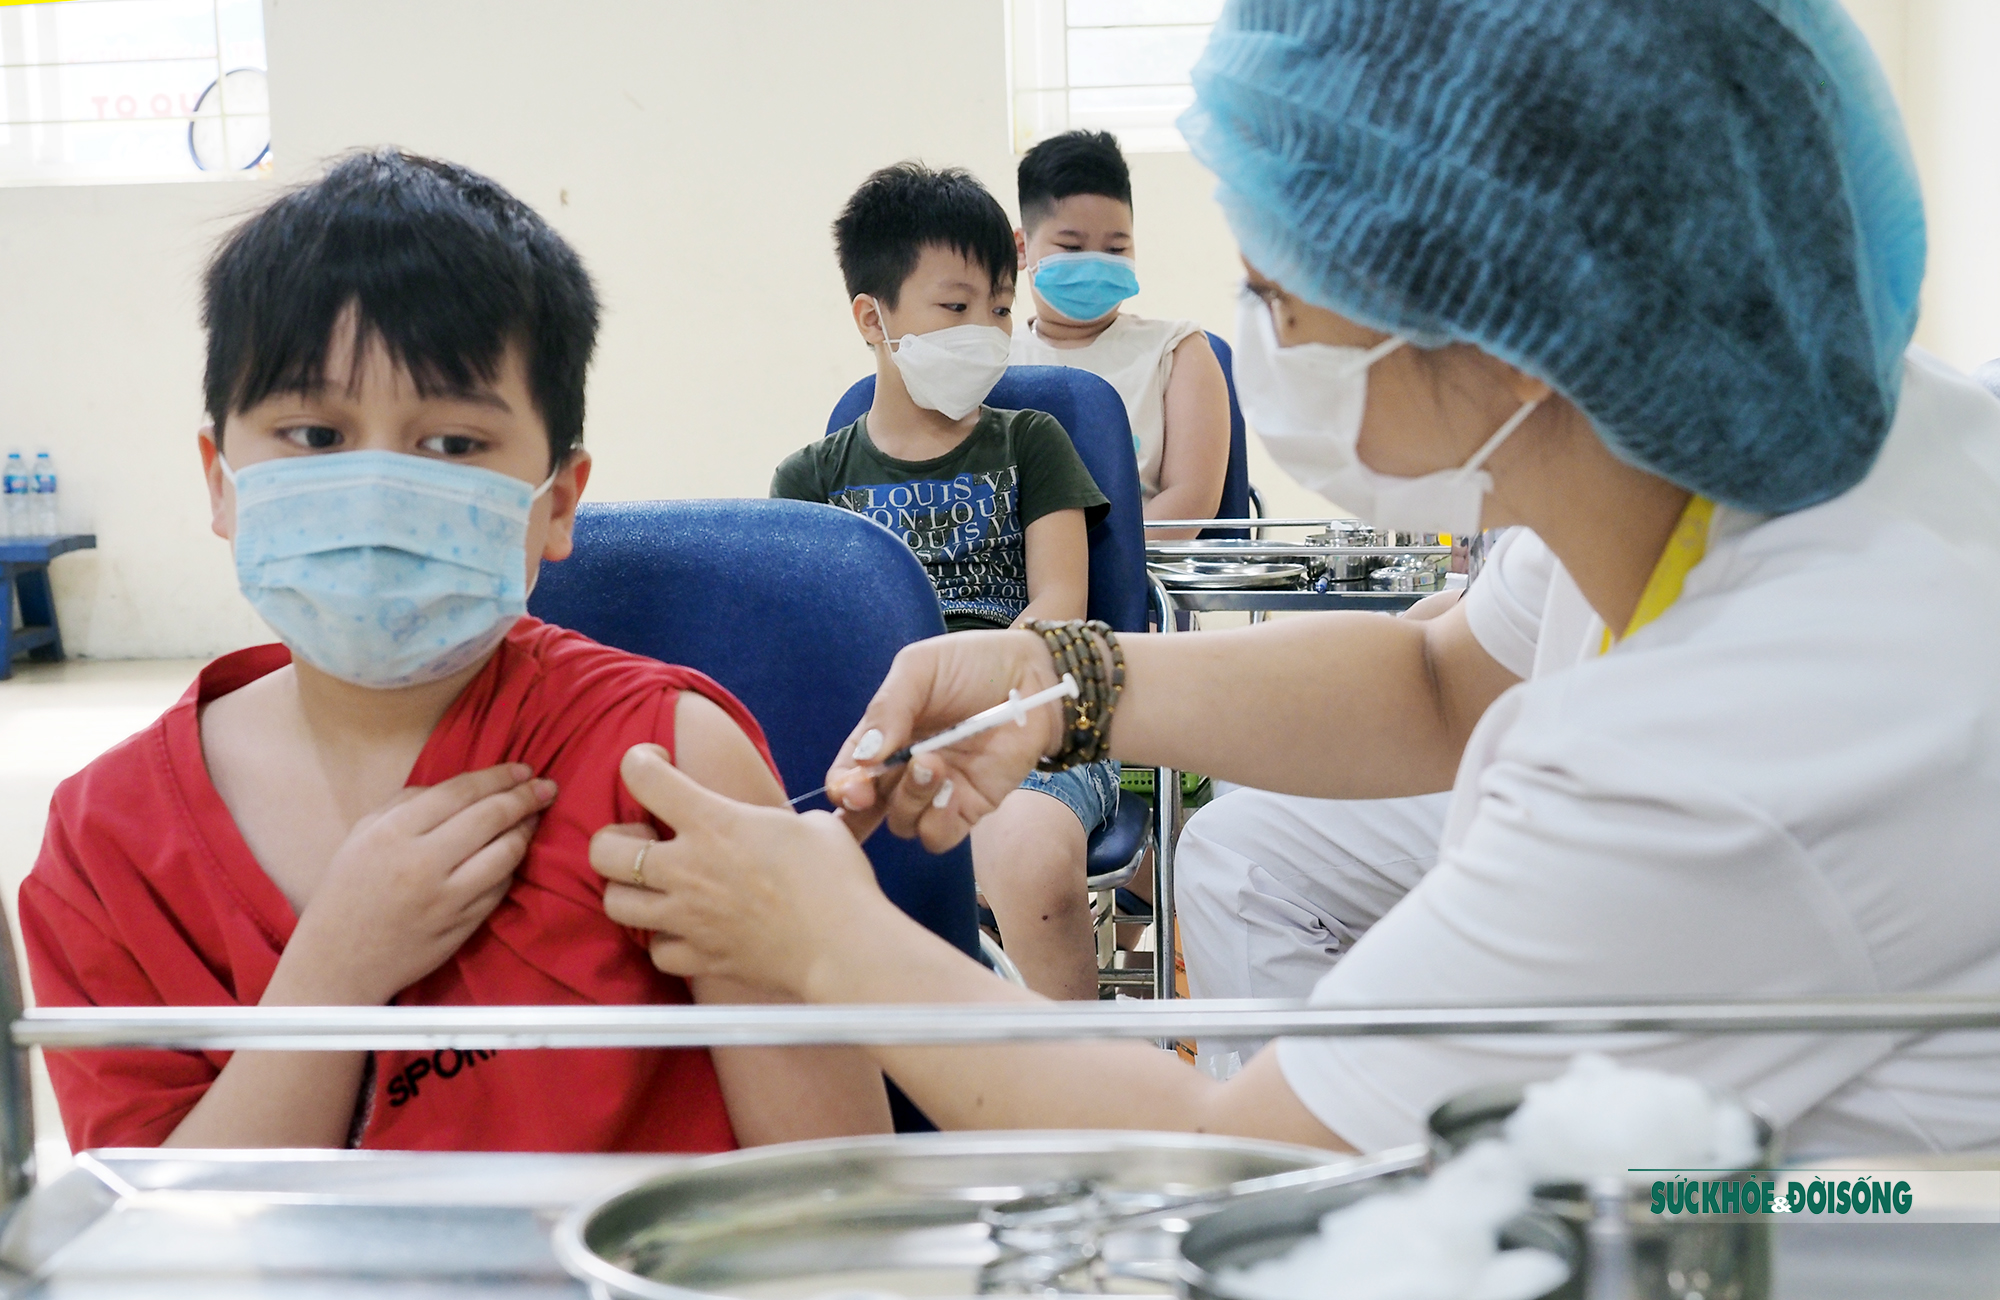 Còn 24 ngày: 7 tỉnh, thành tiêm vaccine COVID-19 cho trẻ từ 5 - dưới 12 tuổi thấp, trong đó có Hà Nội, TP HCM và Đà Nẵng-1